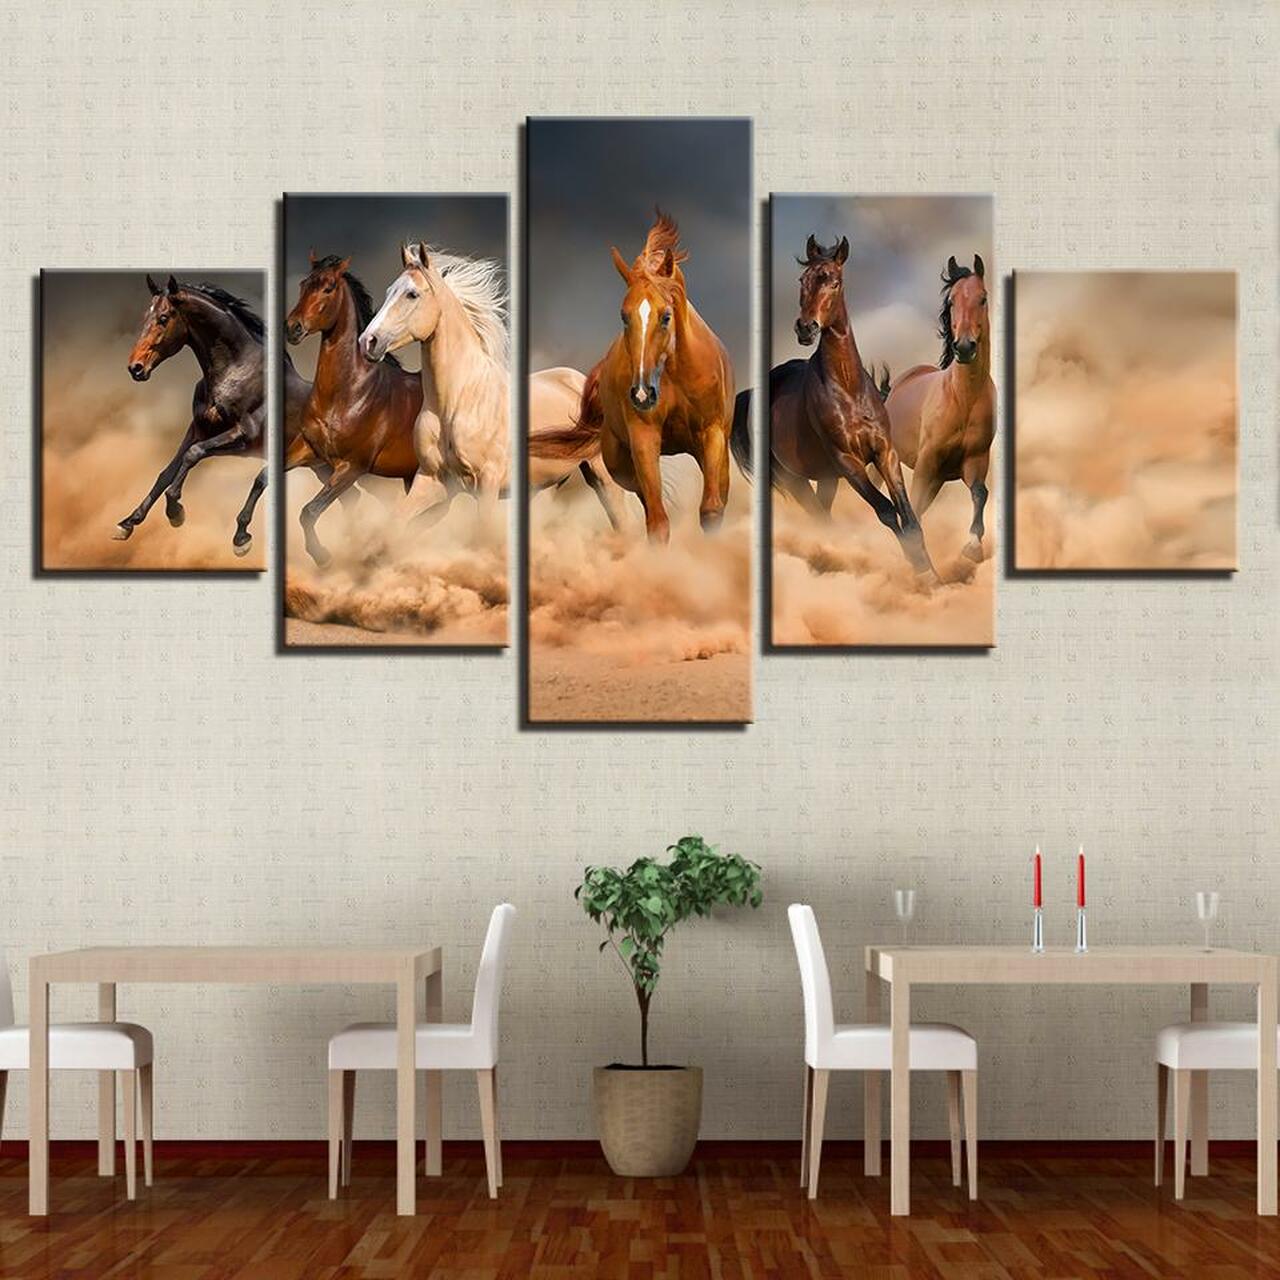 six horses 5 pices peinture sur toile impression sur toile toile art pour la dcoration intrieure2yofb